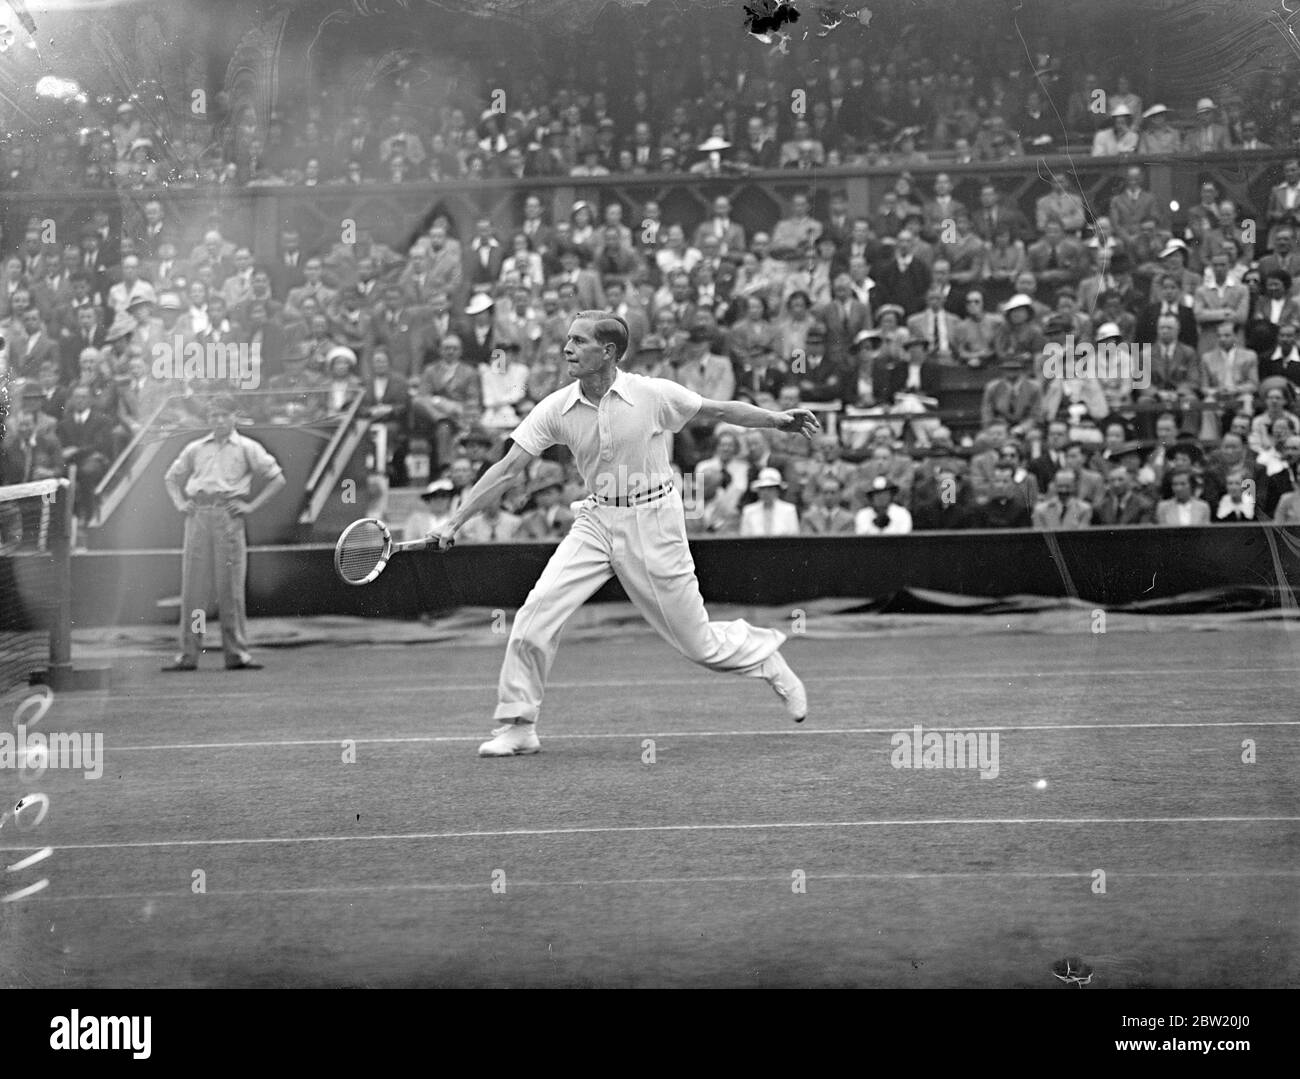 Gottfried von Cramm aus Deutschland und B. M. Grant aus Amerika trafen sich im ersten Spiel des Inter-Zone Finals am Centre Court in Wimbledon, um zu entscheiden, welches Land Großbritannien für den Davis Cup herausfordern soll. Von Cramm im Spiel gegen Grant. 17 Juli 1937 Stockfoto